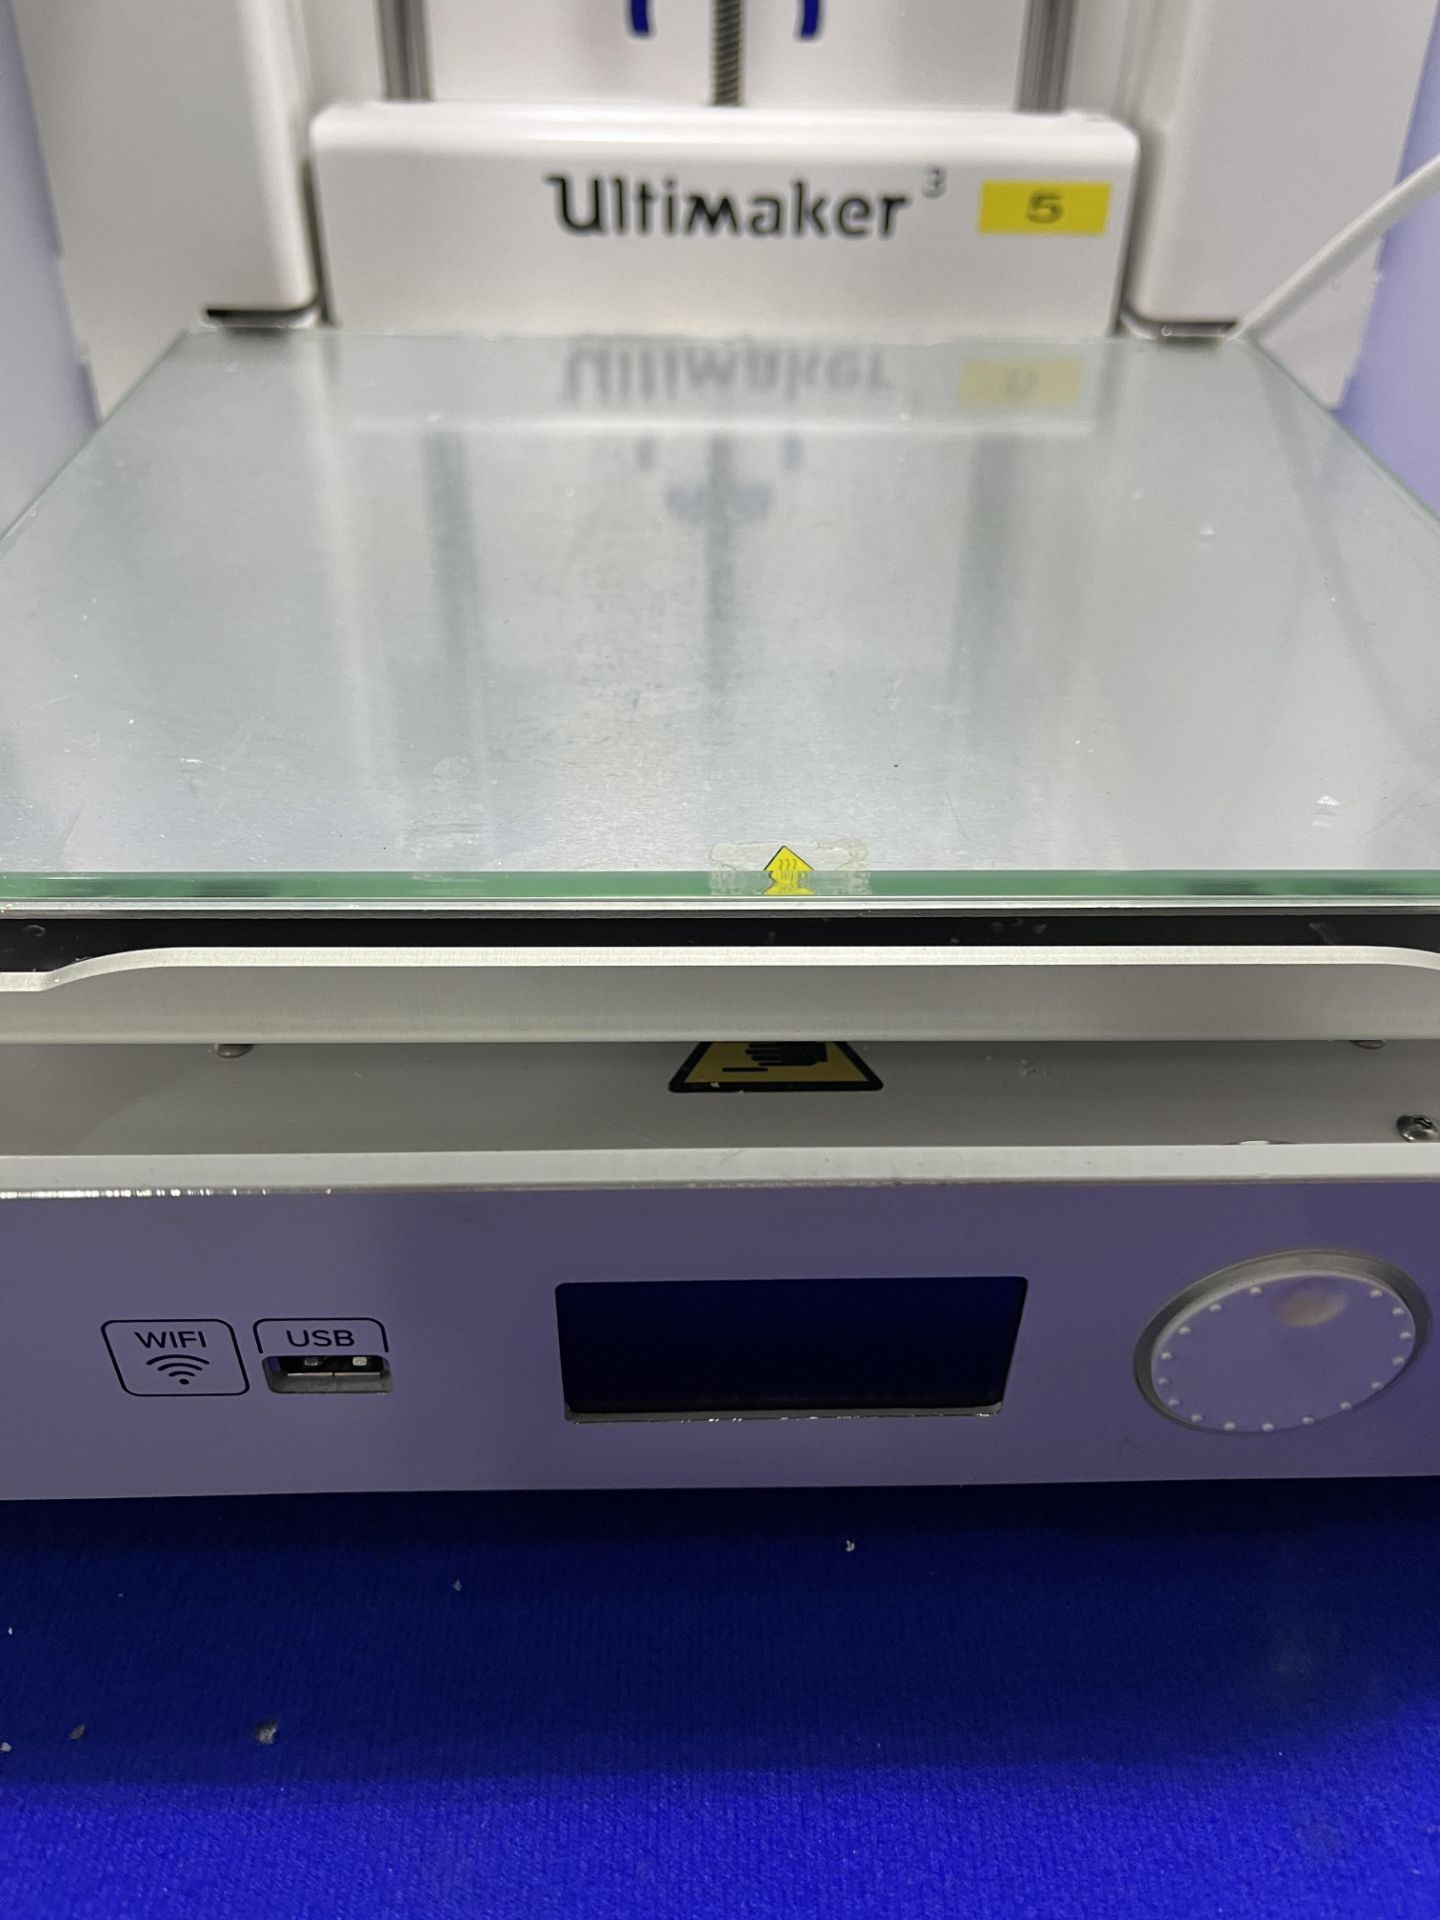 Ultimaker Model 3 3D printer - Image 3 of 5